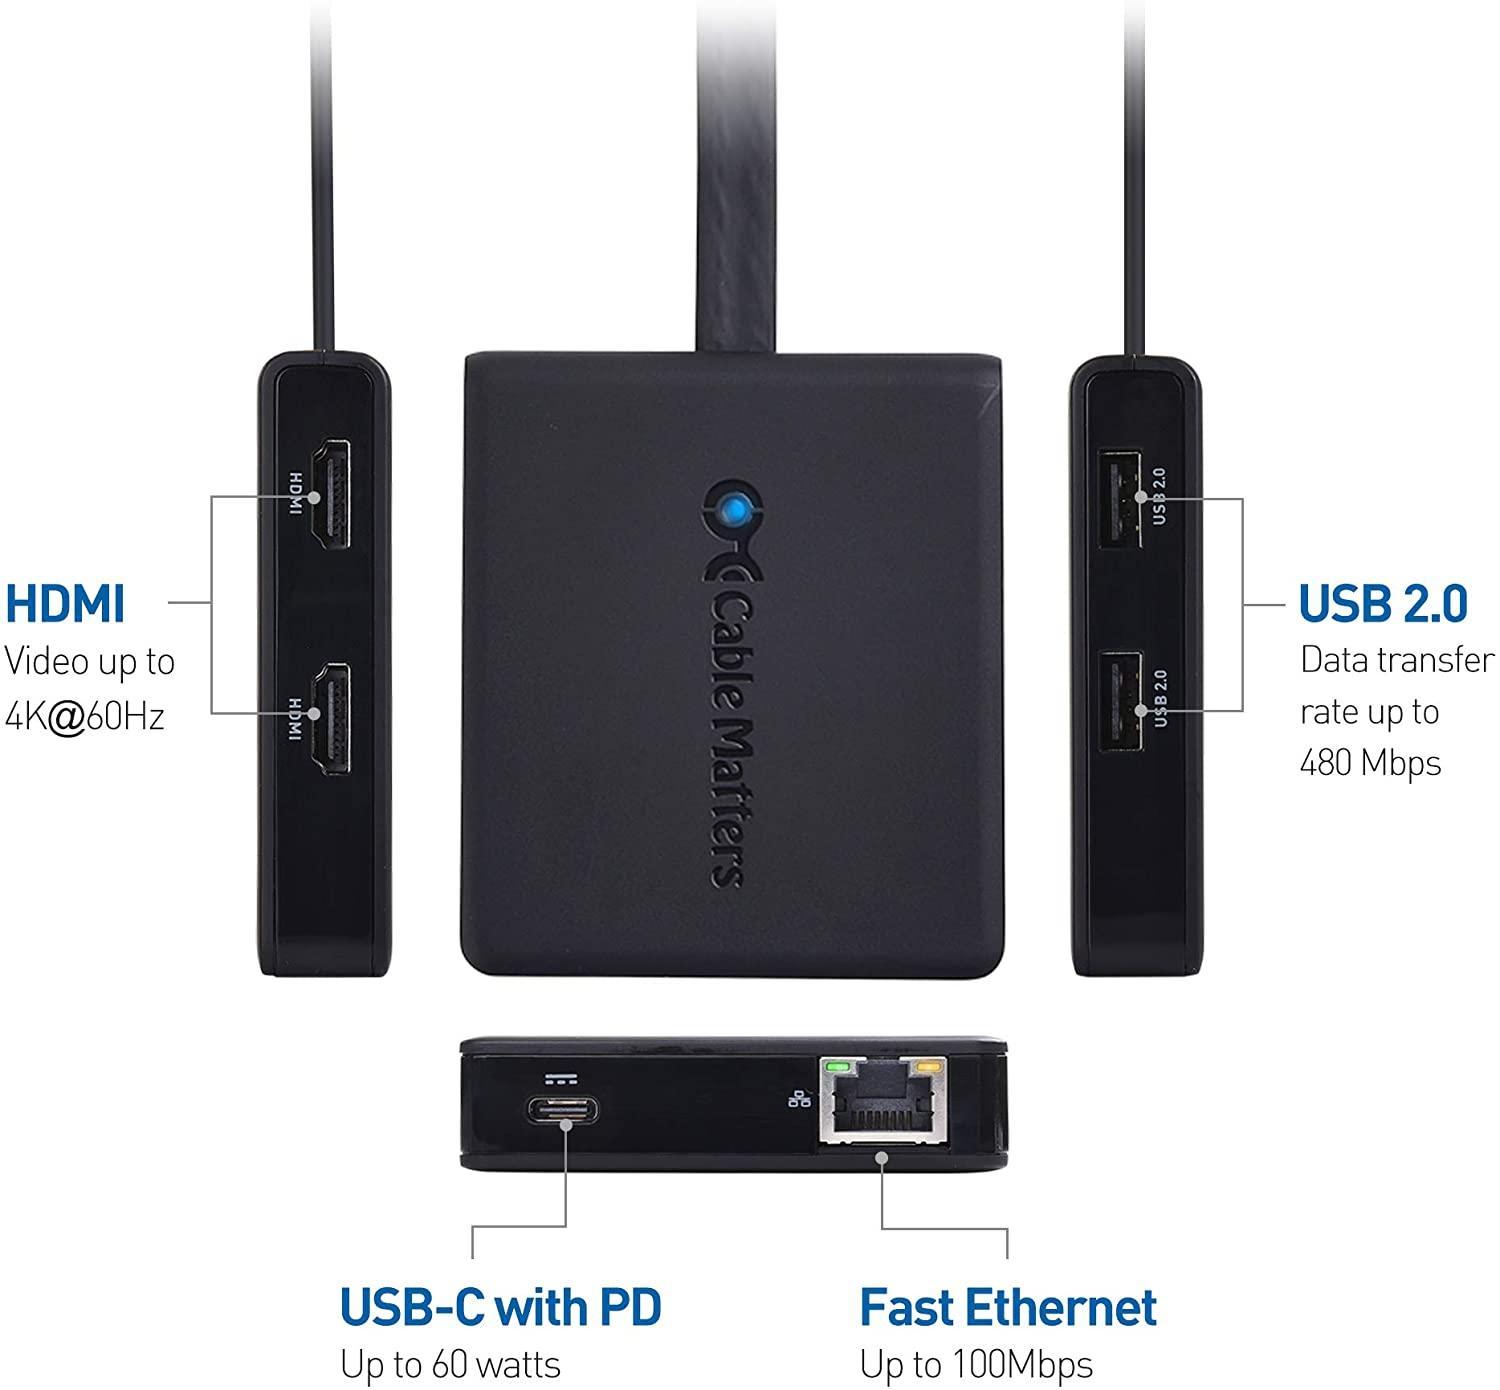 Cable Matters 1 til 6 USB-C-dokkingstasjon 2xHDMI 4K60Hz, 1xPD60W 1xRJ45 GigaLan og 2xUSB-A, kompatibel med Thunderbolt 3/4 og USB4